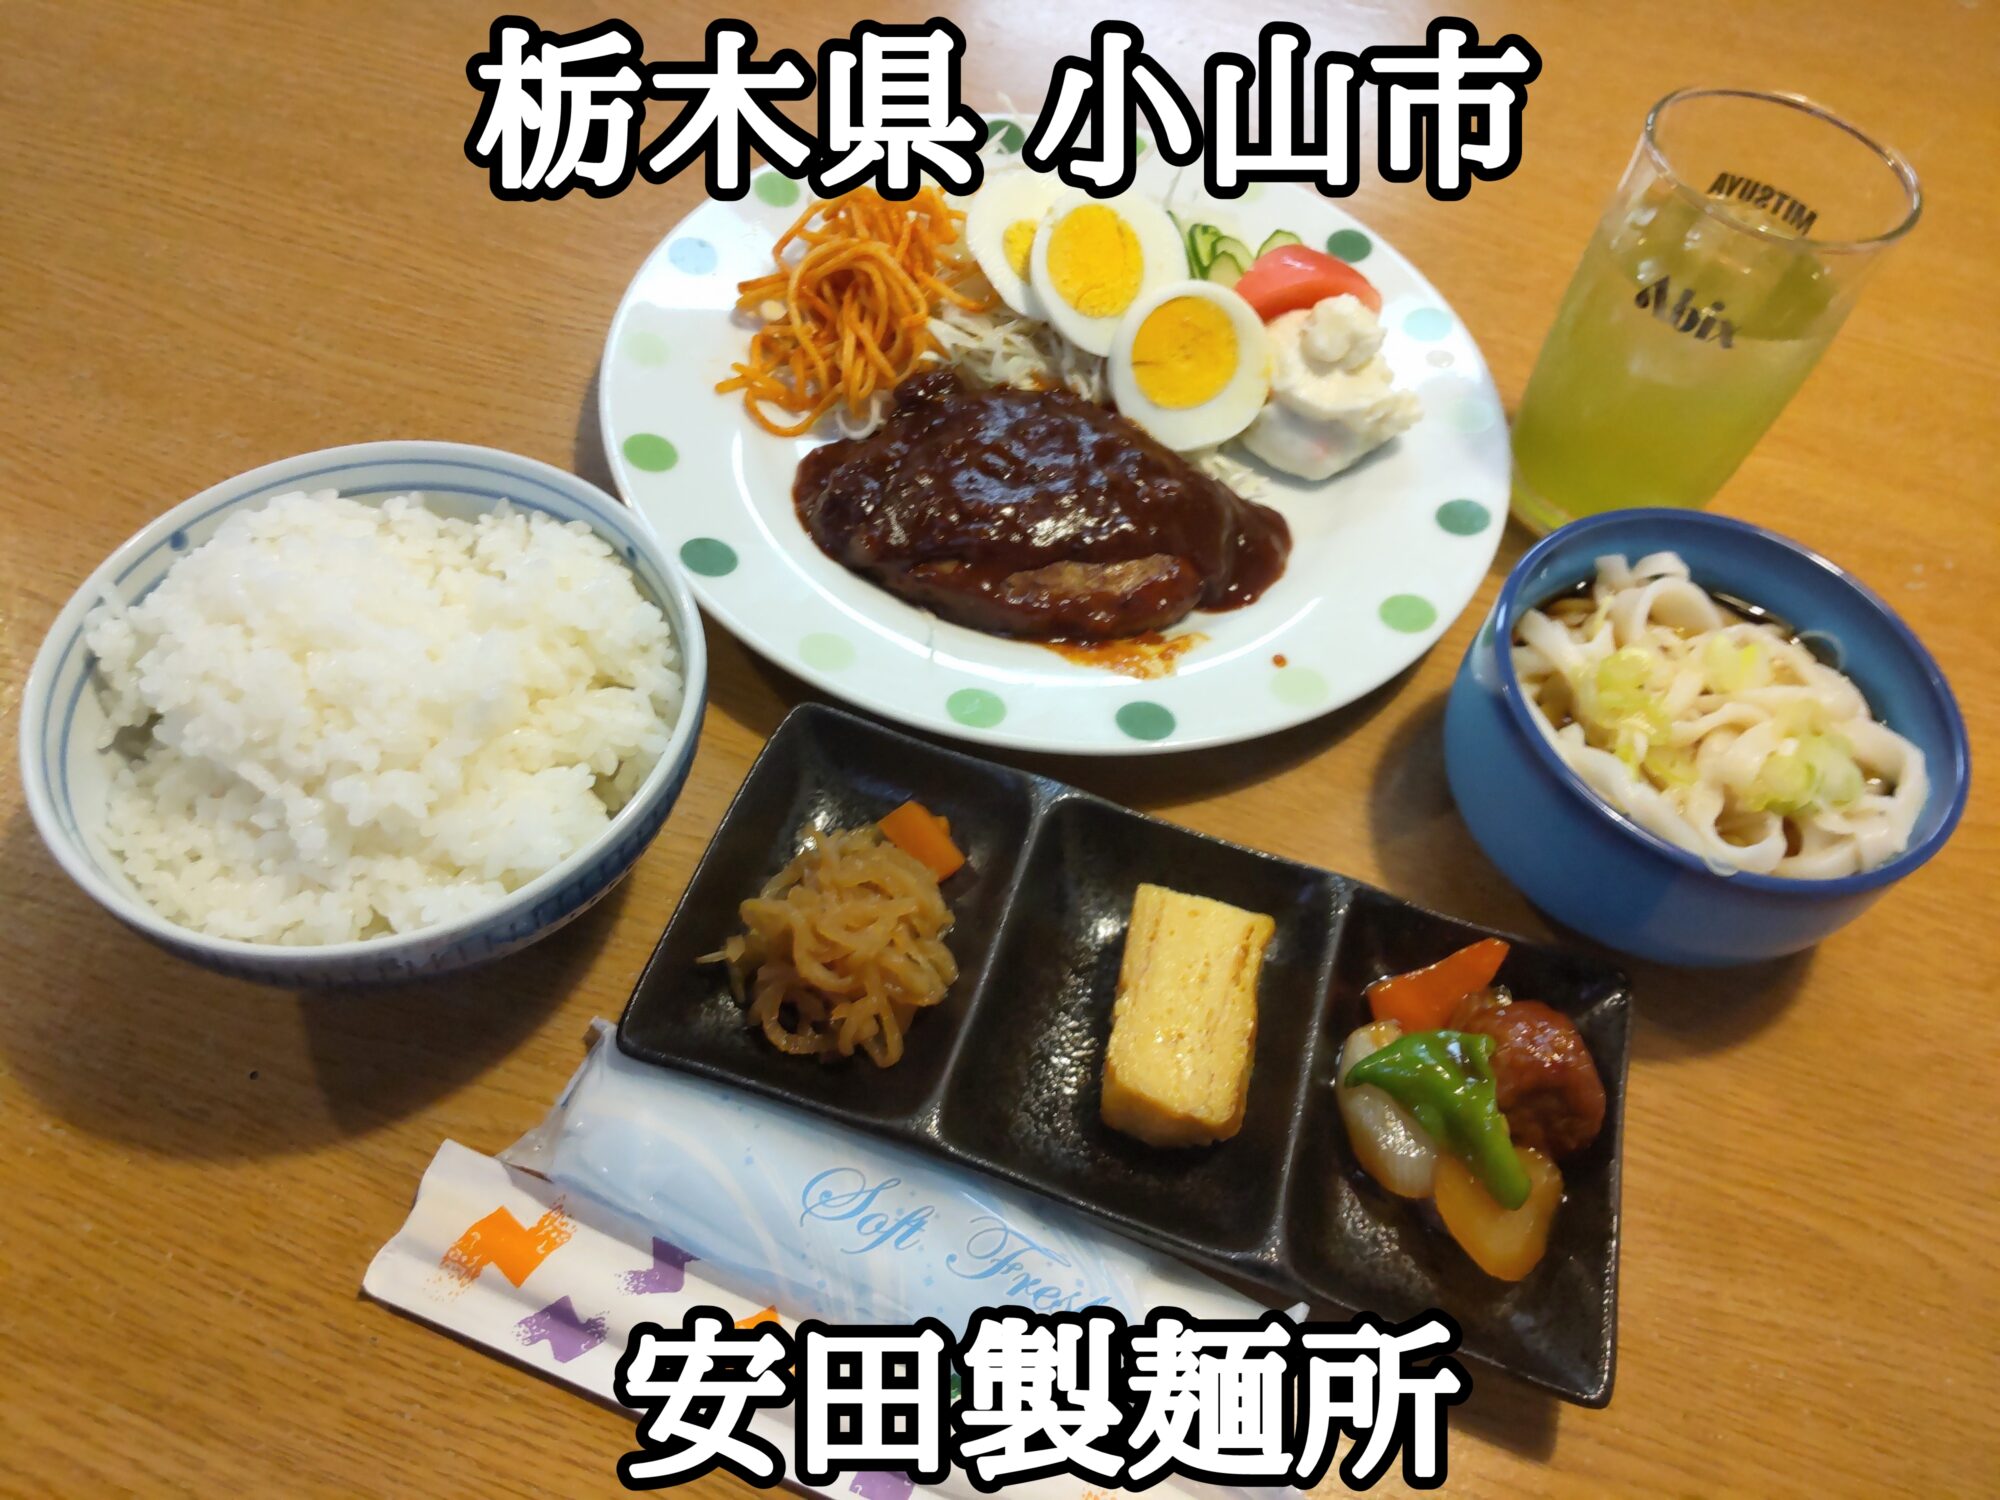 【栃木県】【小山市】「安田製麺所」オモウマい店で色々なサービスをされました